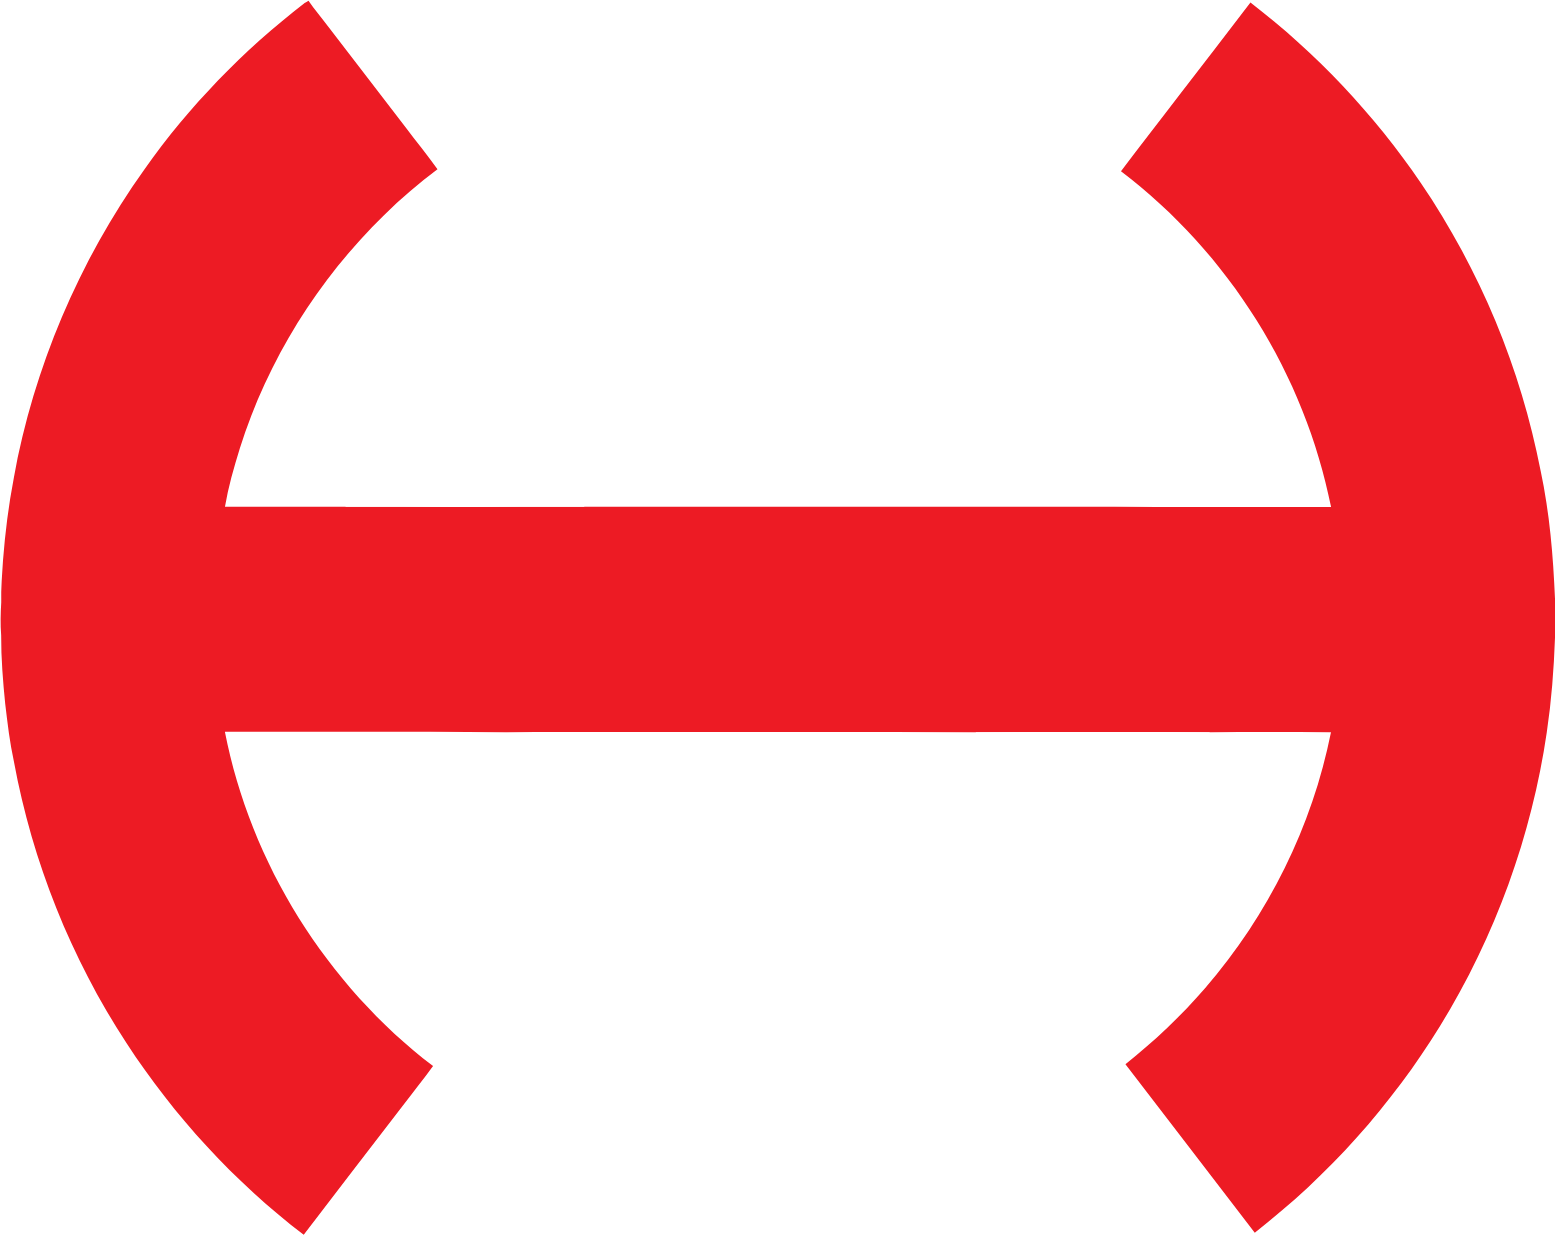 Hesai Group logo pour fonds sombres (PNG transparent)